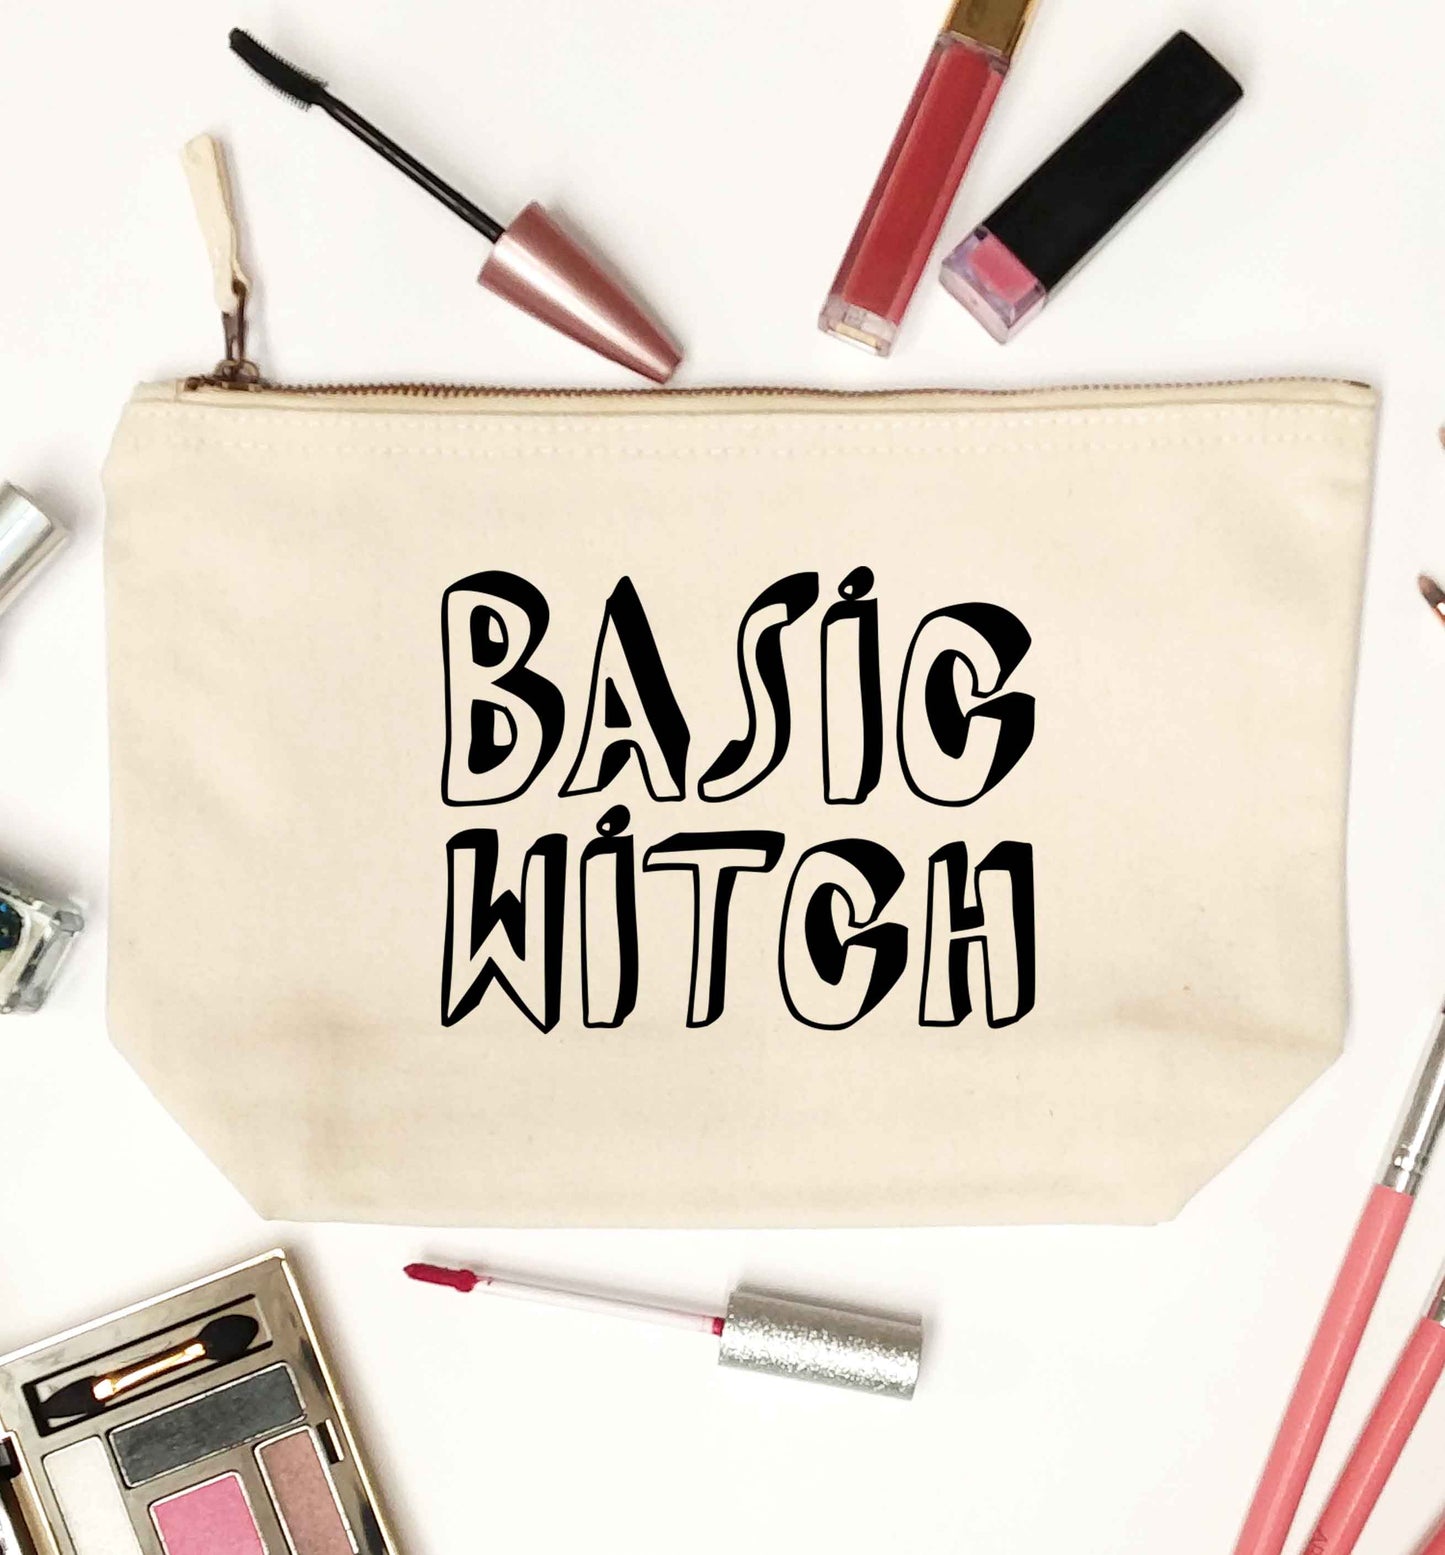 Basic witch natural makeup bag